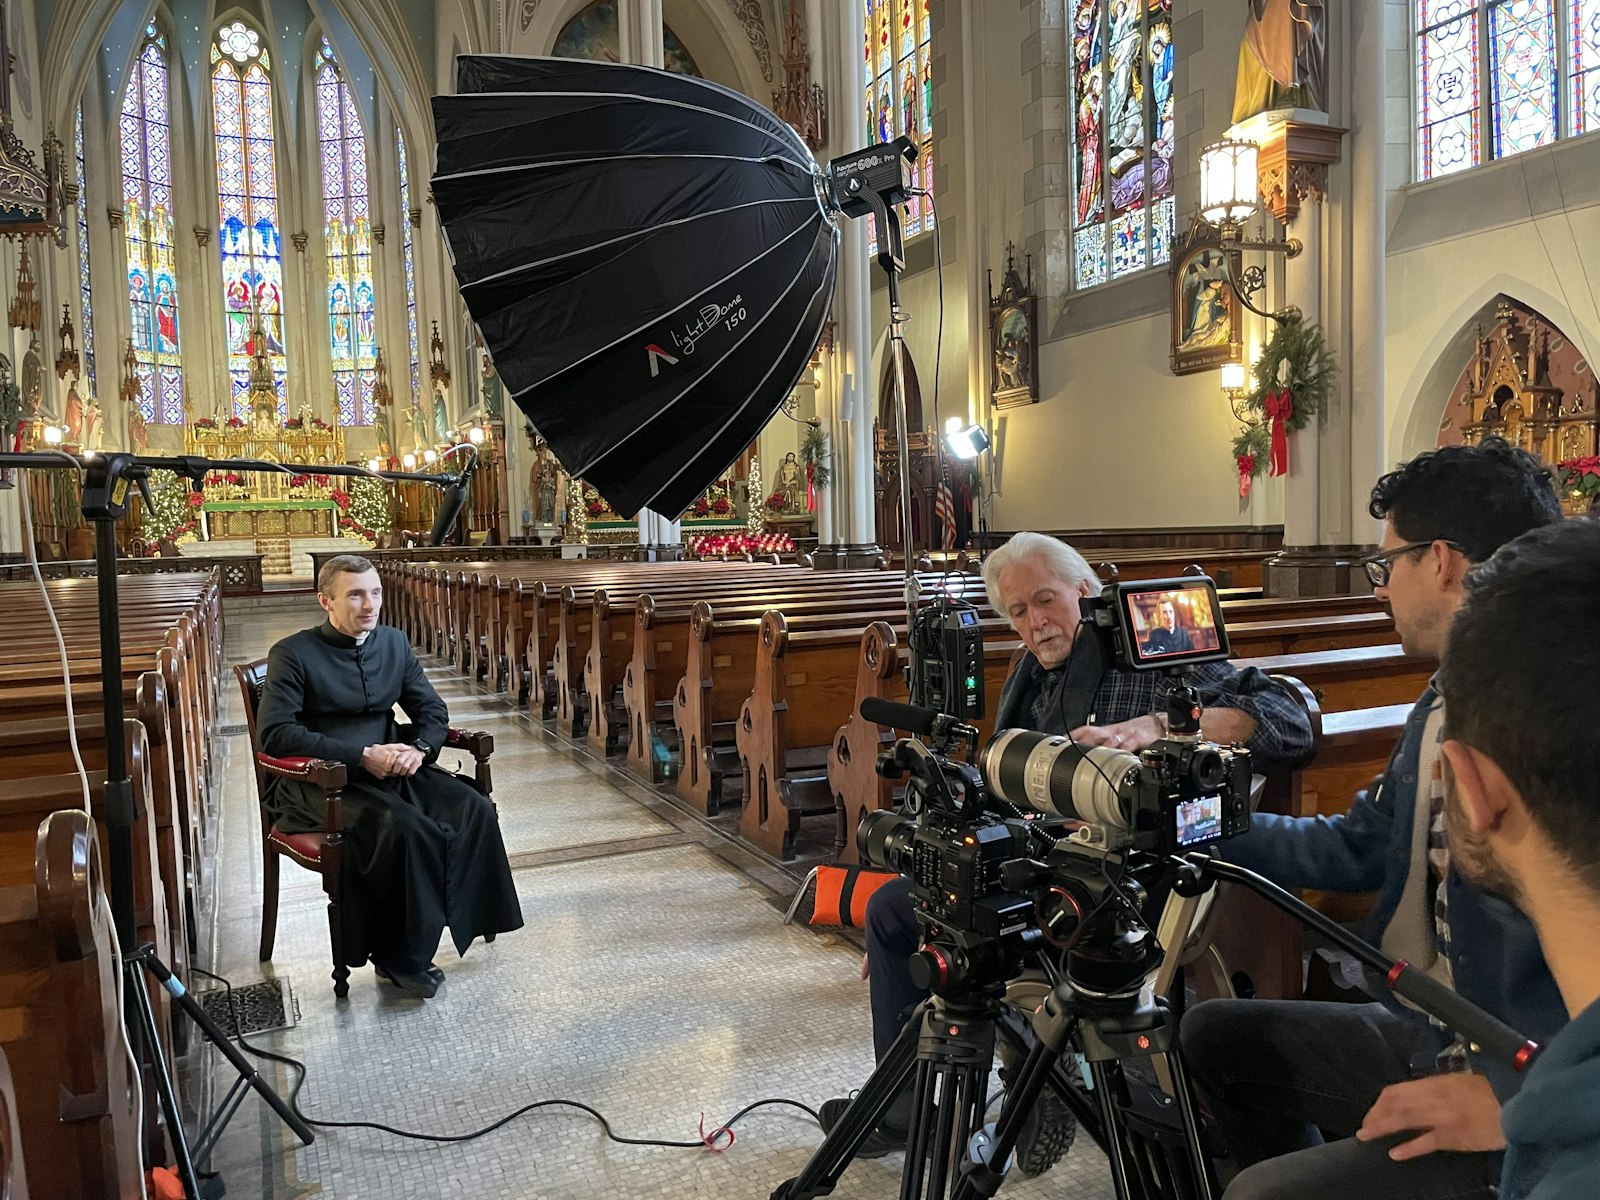 El documental incluye entrevistas con el Canónigo Jean-Baptiste Commins, ICKSP, rector de St. Joseph Shrine y Mons. Charles Kosanke de la Basílica de Ste. Anne y la cercana Parroquia Most Holy Trinity. (Cortesía de Visionalist Entertainment Productions)